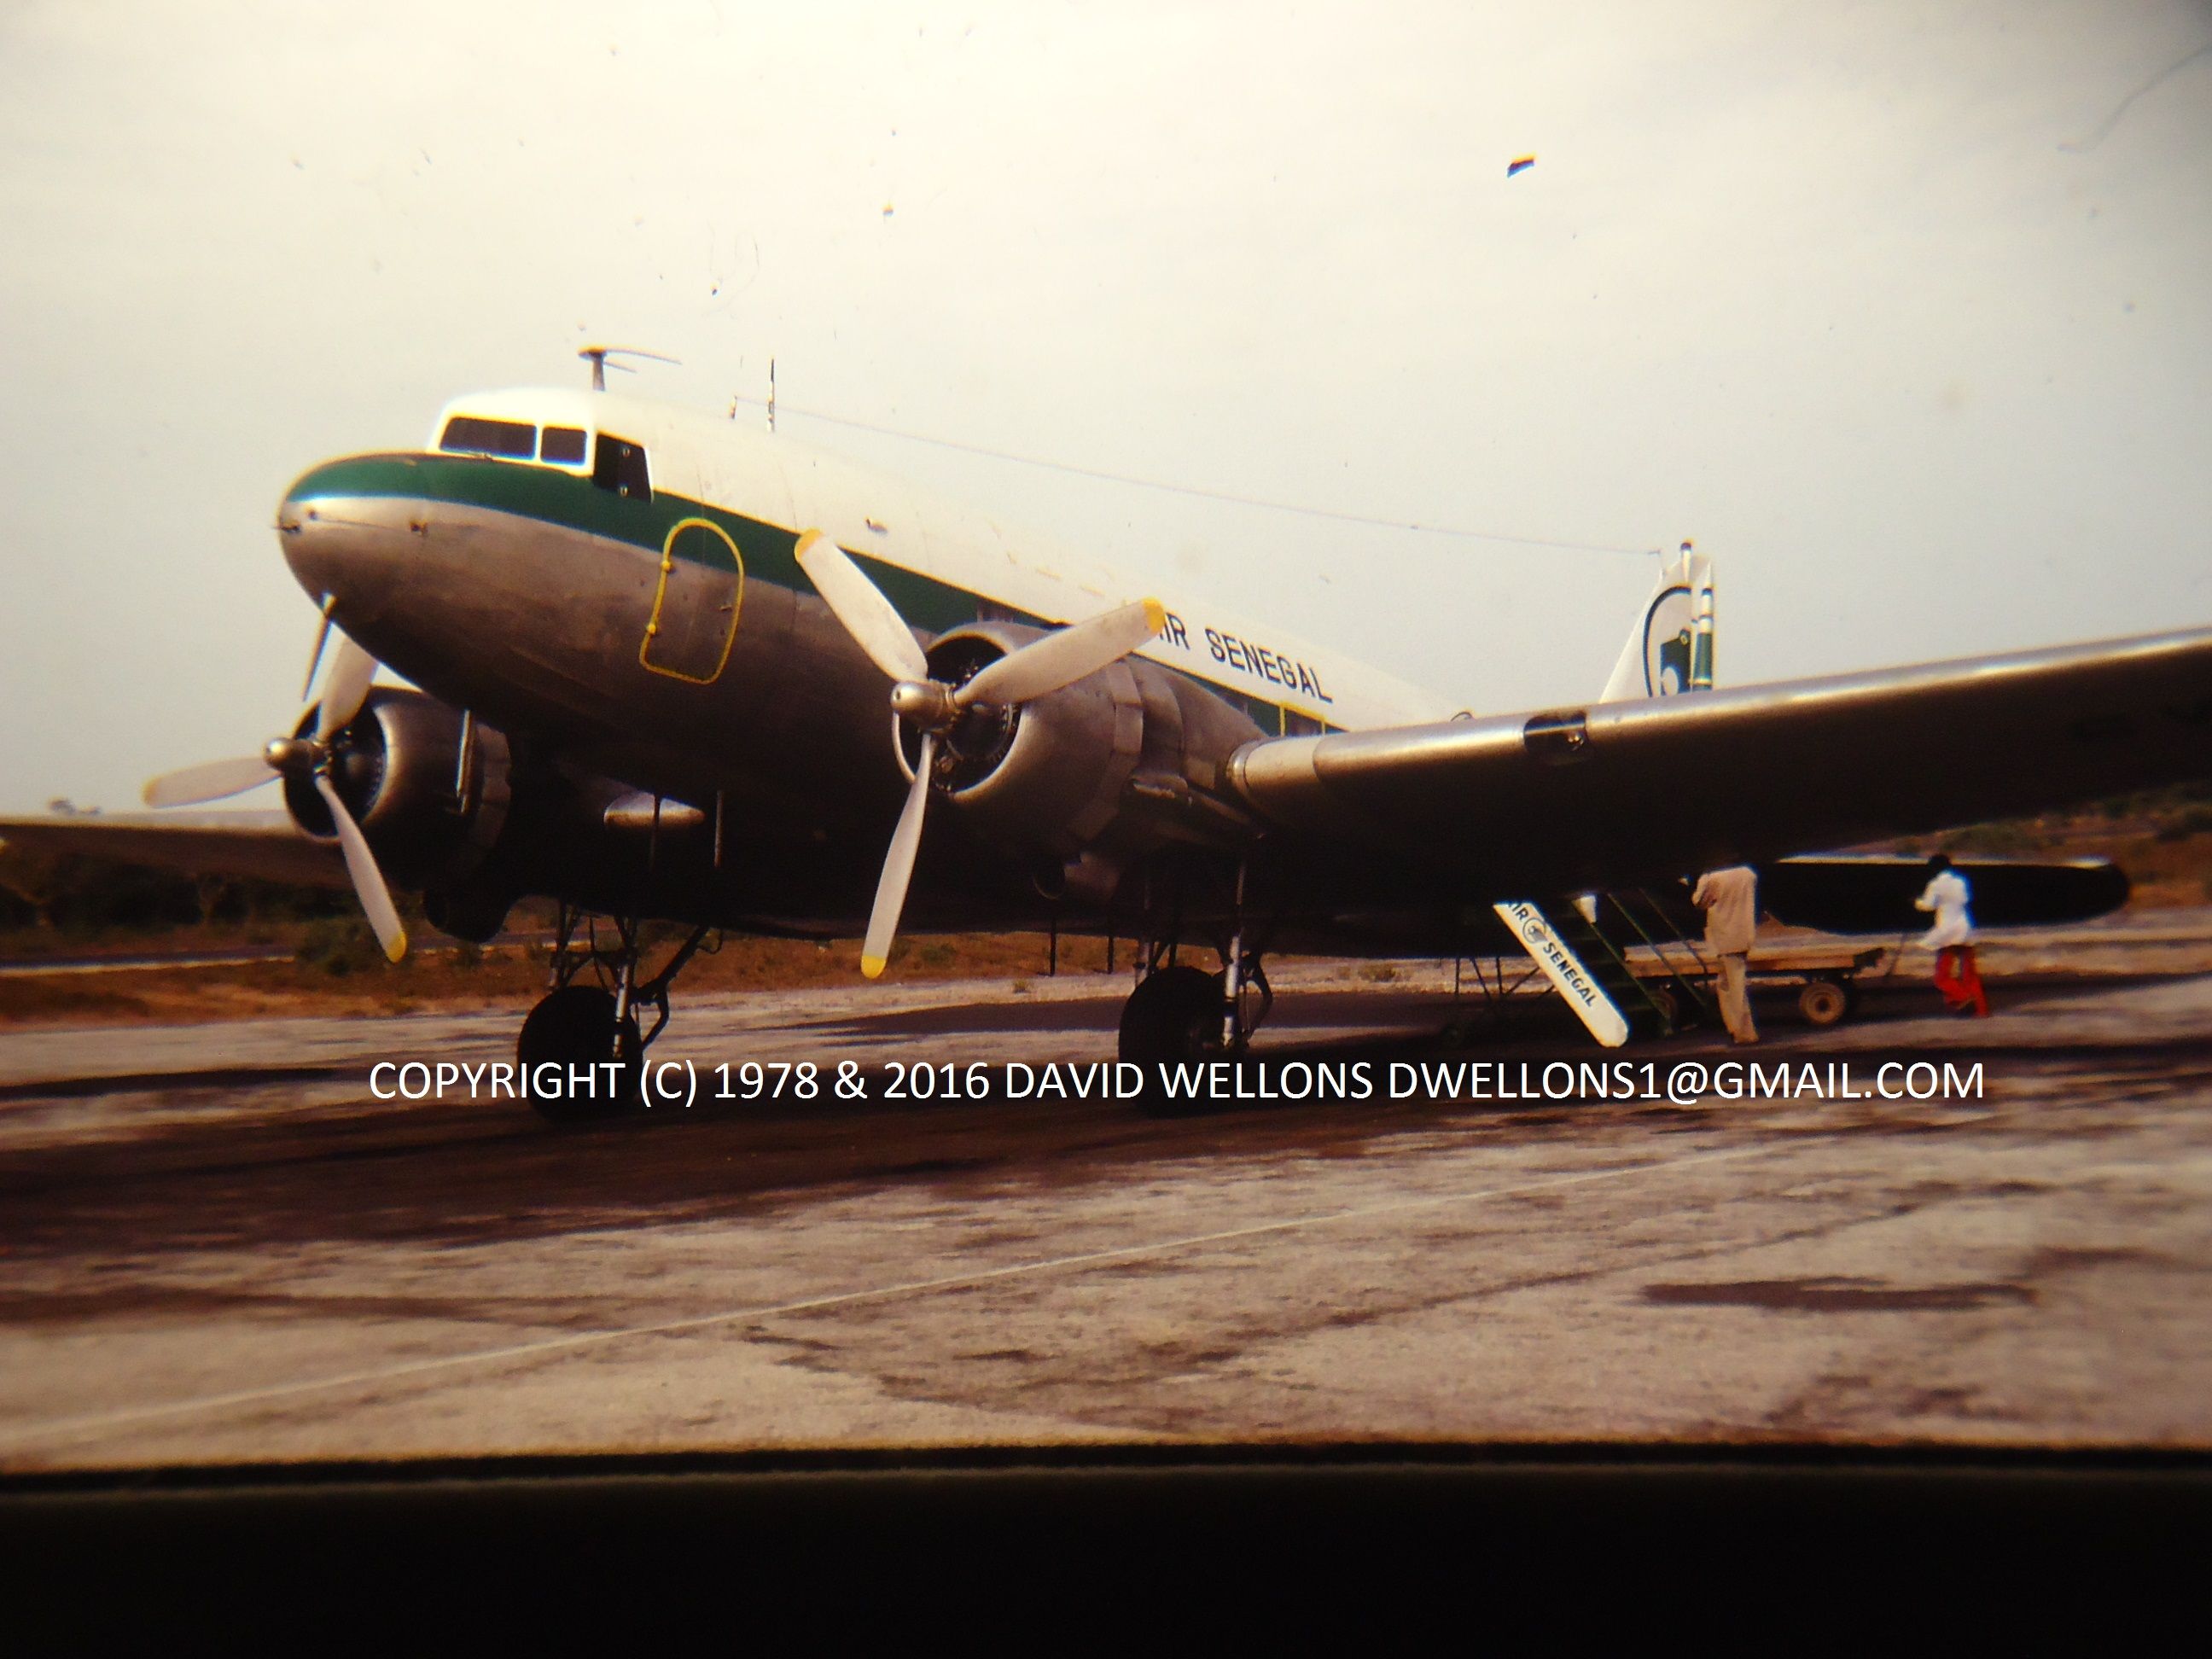 DC3 AIR SENEGAL David Wellons